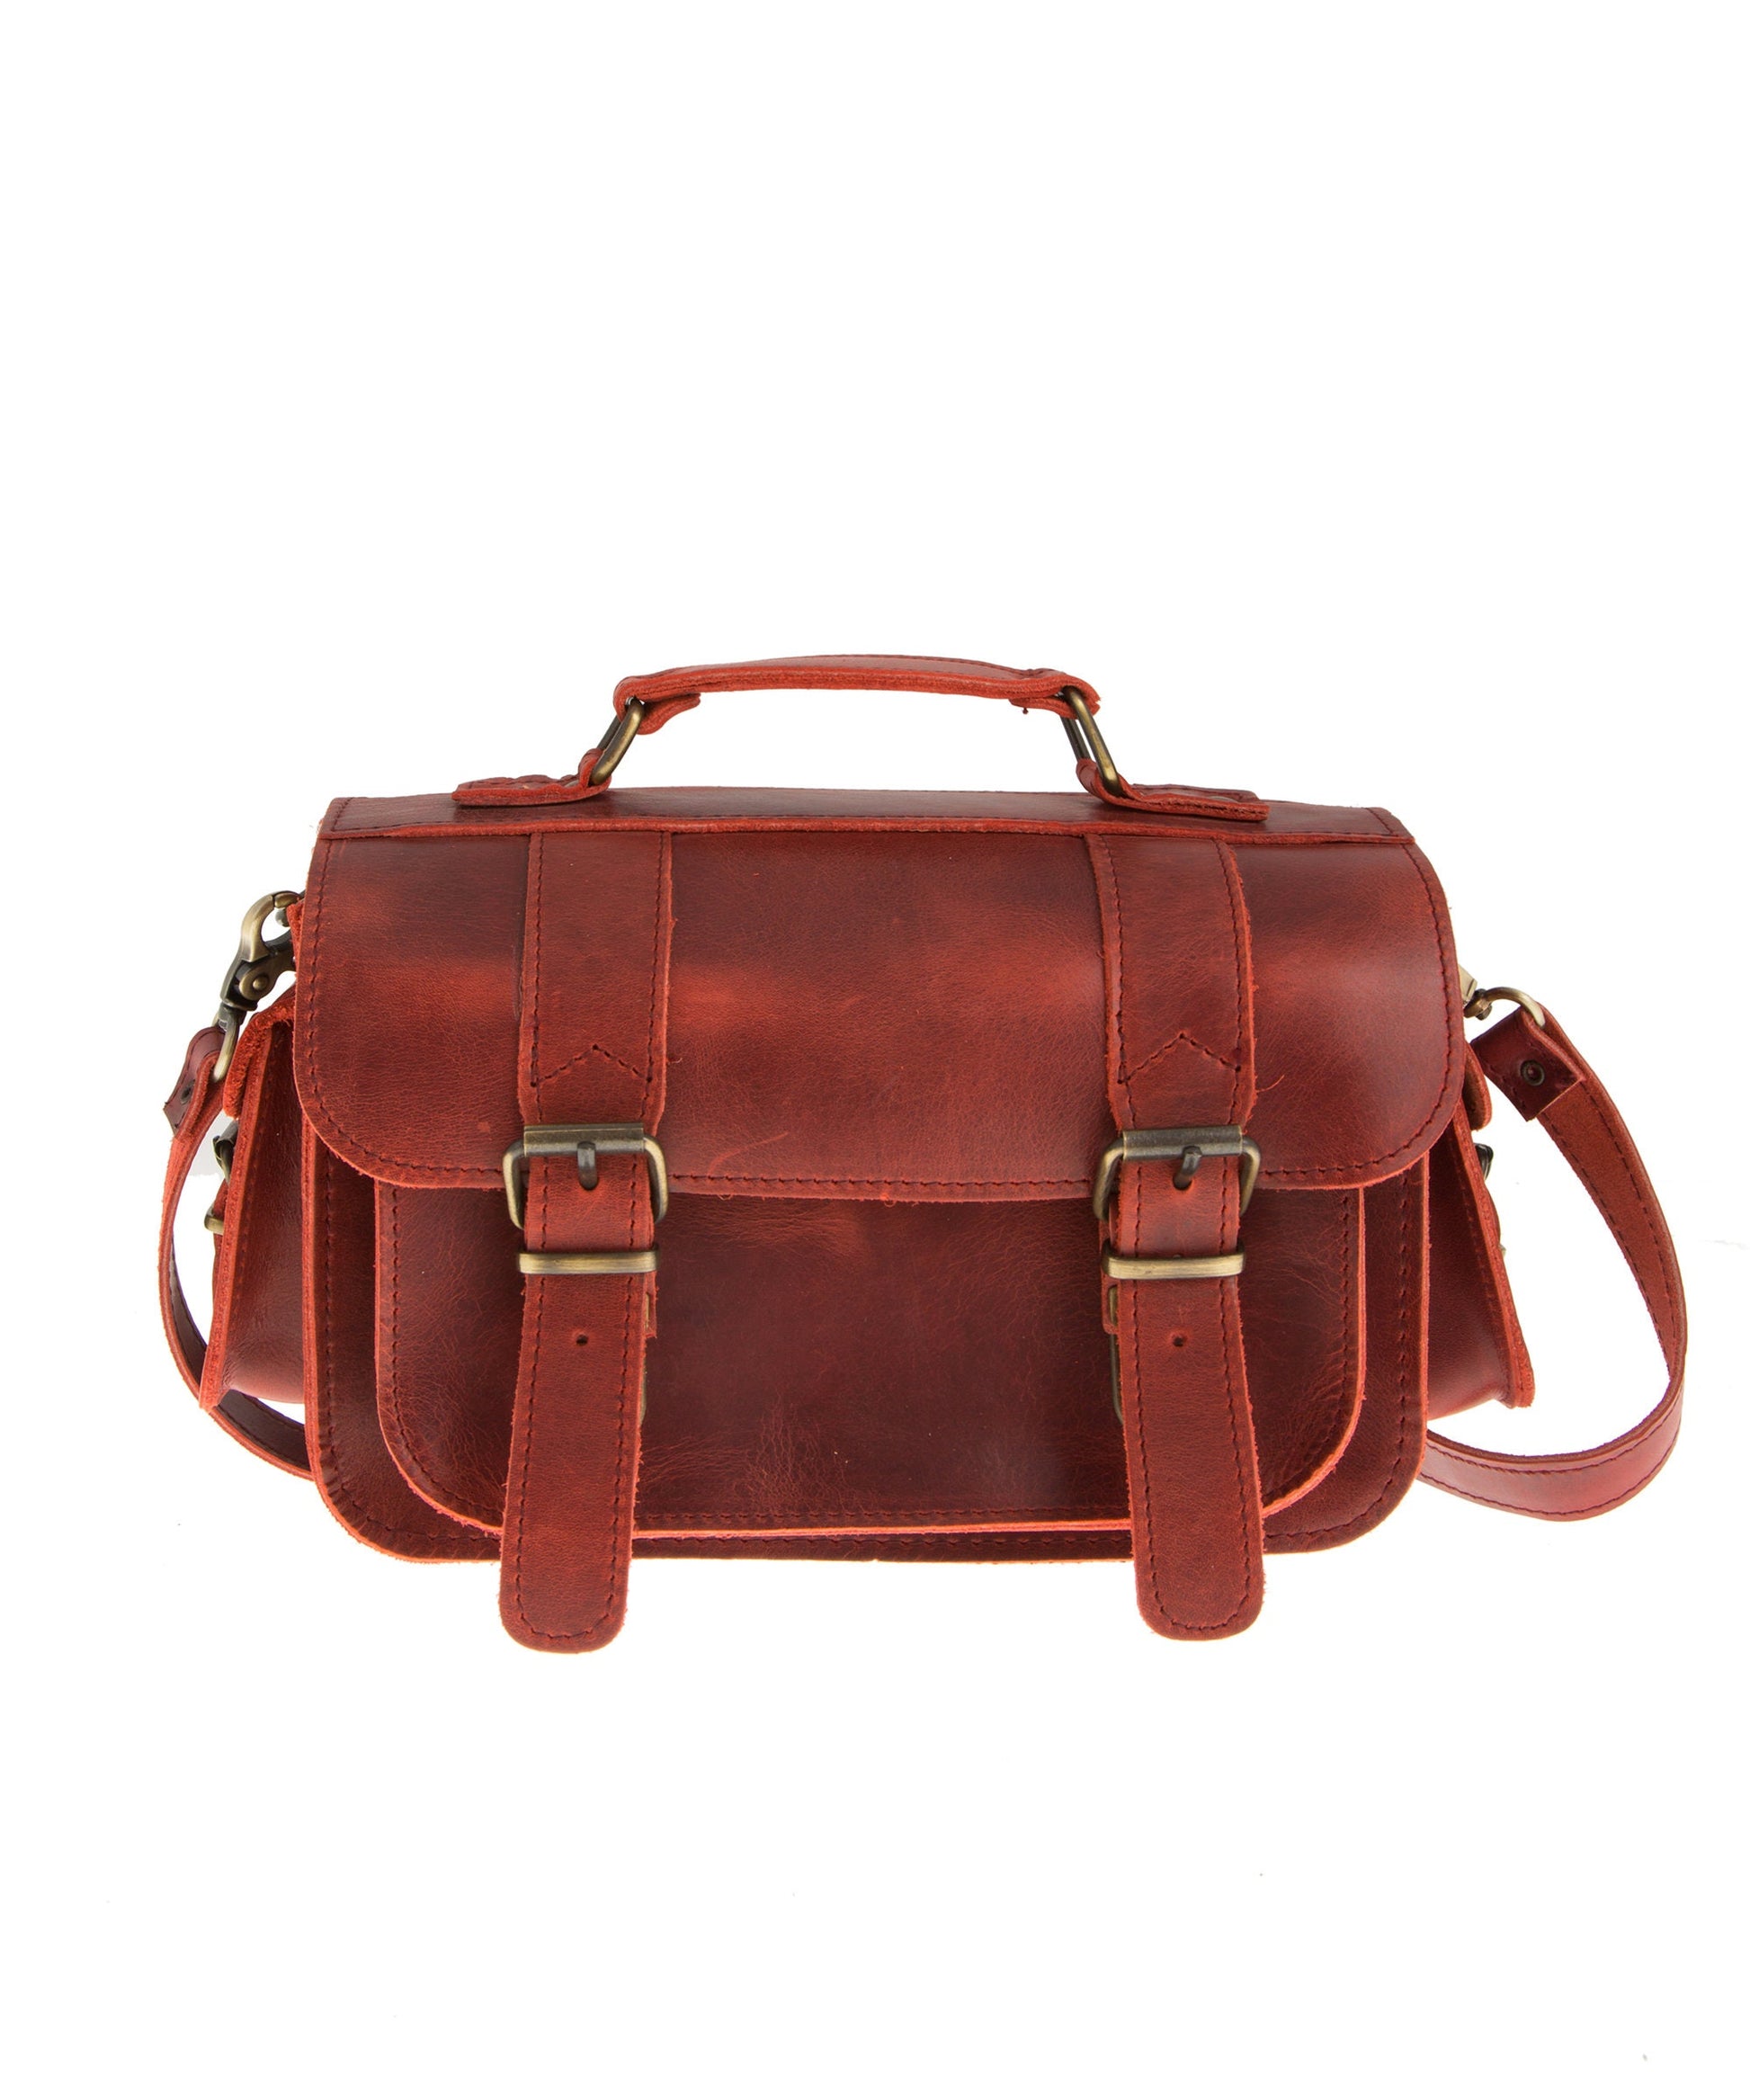 Vintage leather camera bag, Stylish large camera bag, Travel camera case, Photographer gift